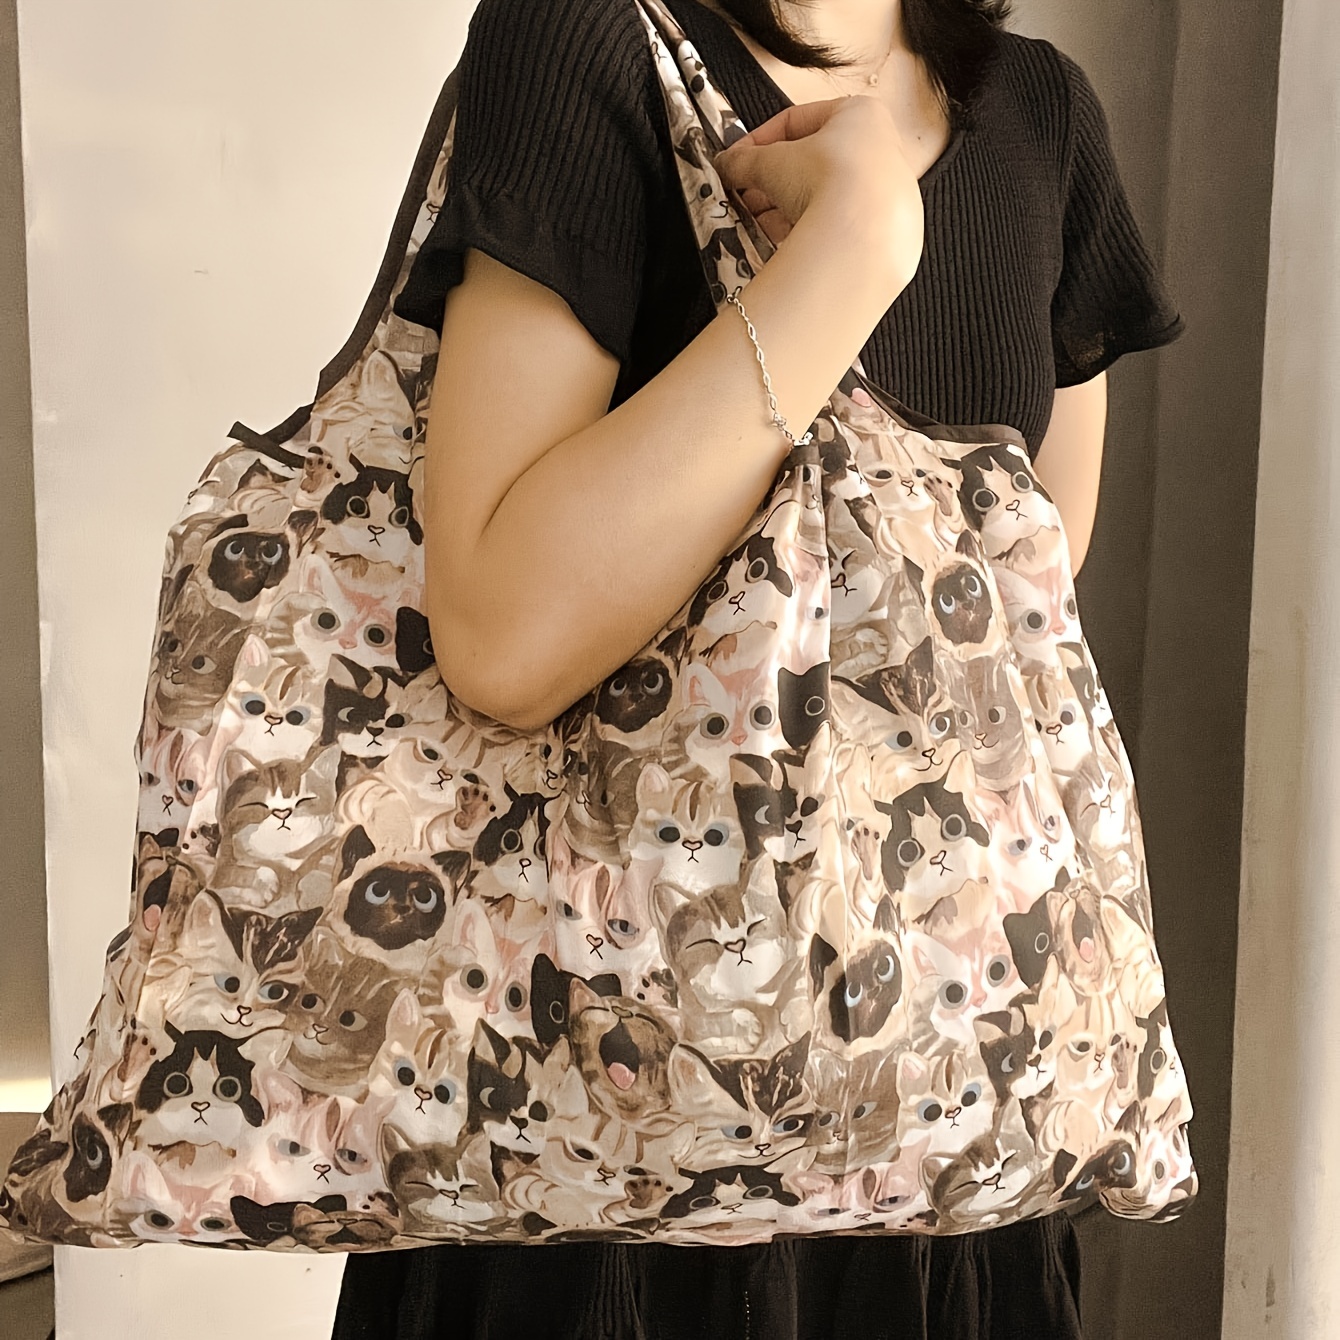 Kawaii Cai Pattern Shopper Bag - Lightweight & Reusable